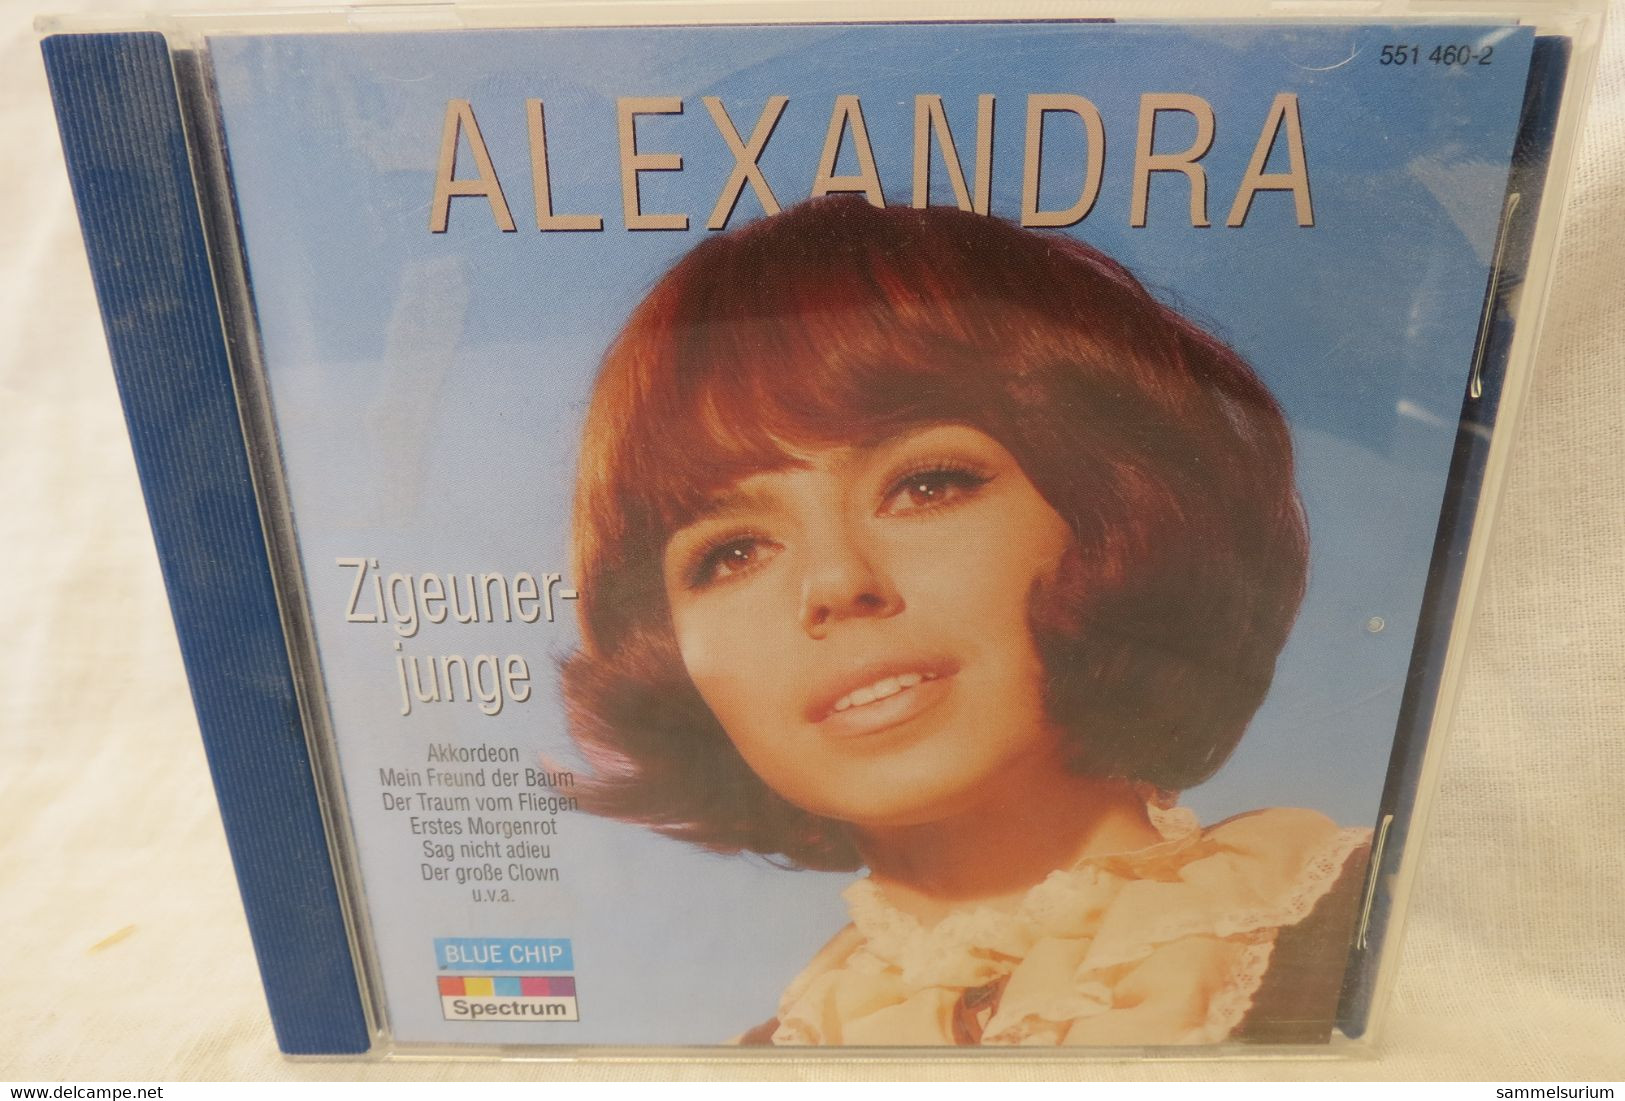 CD Alexandra "Zigeunerjunge" - Sonstige - Deutsche Musik